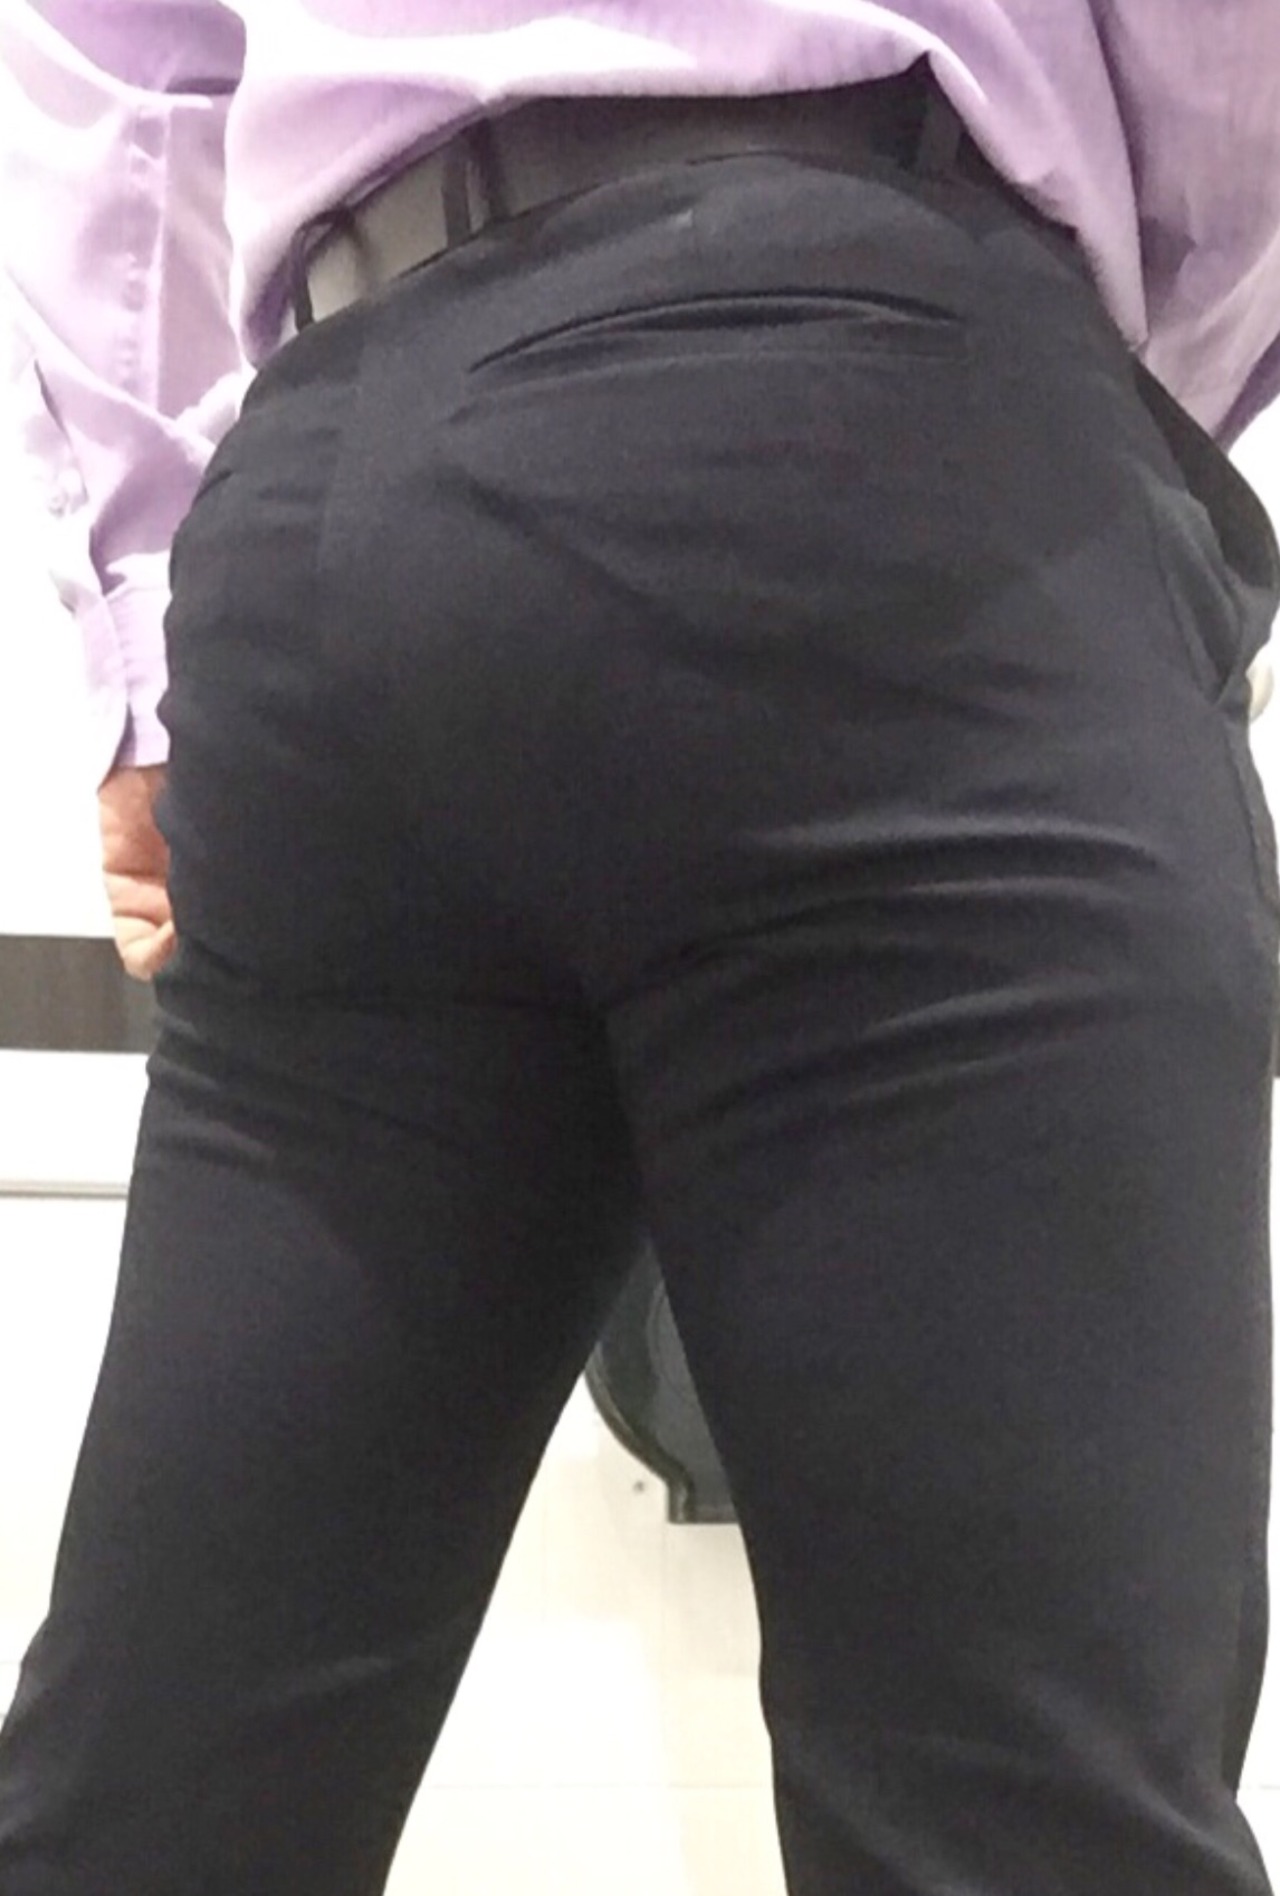 Hot butt